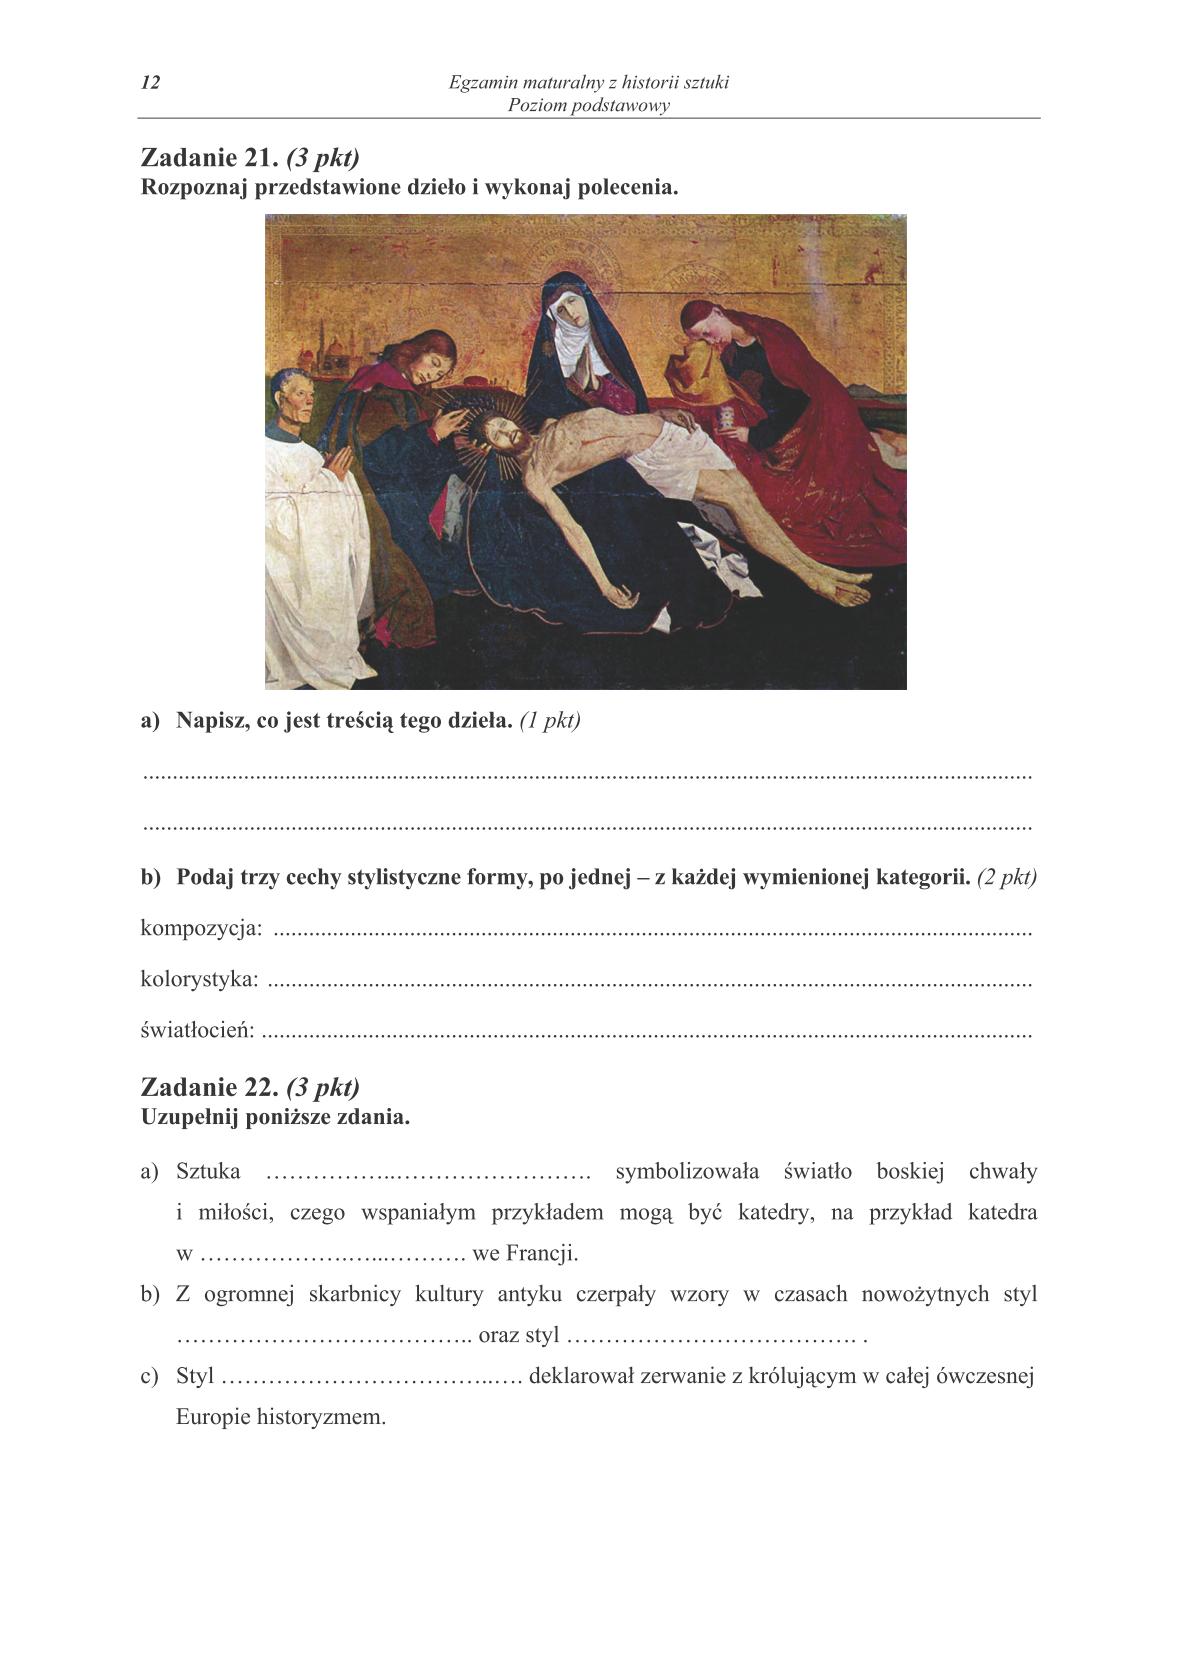 pytania-historia-sztuki-poziom-podstawowy-matura-2014-str.12